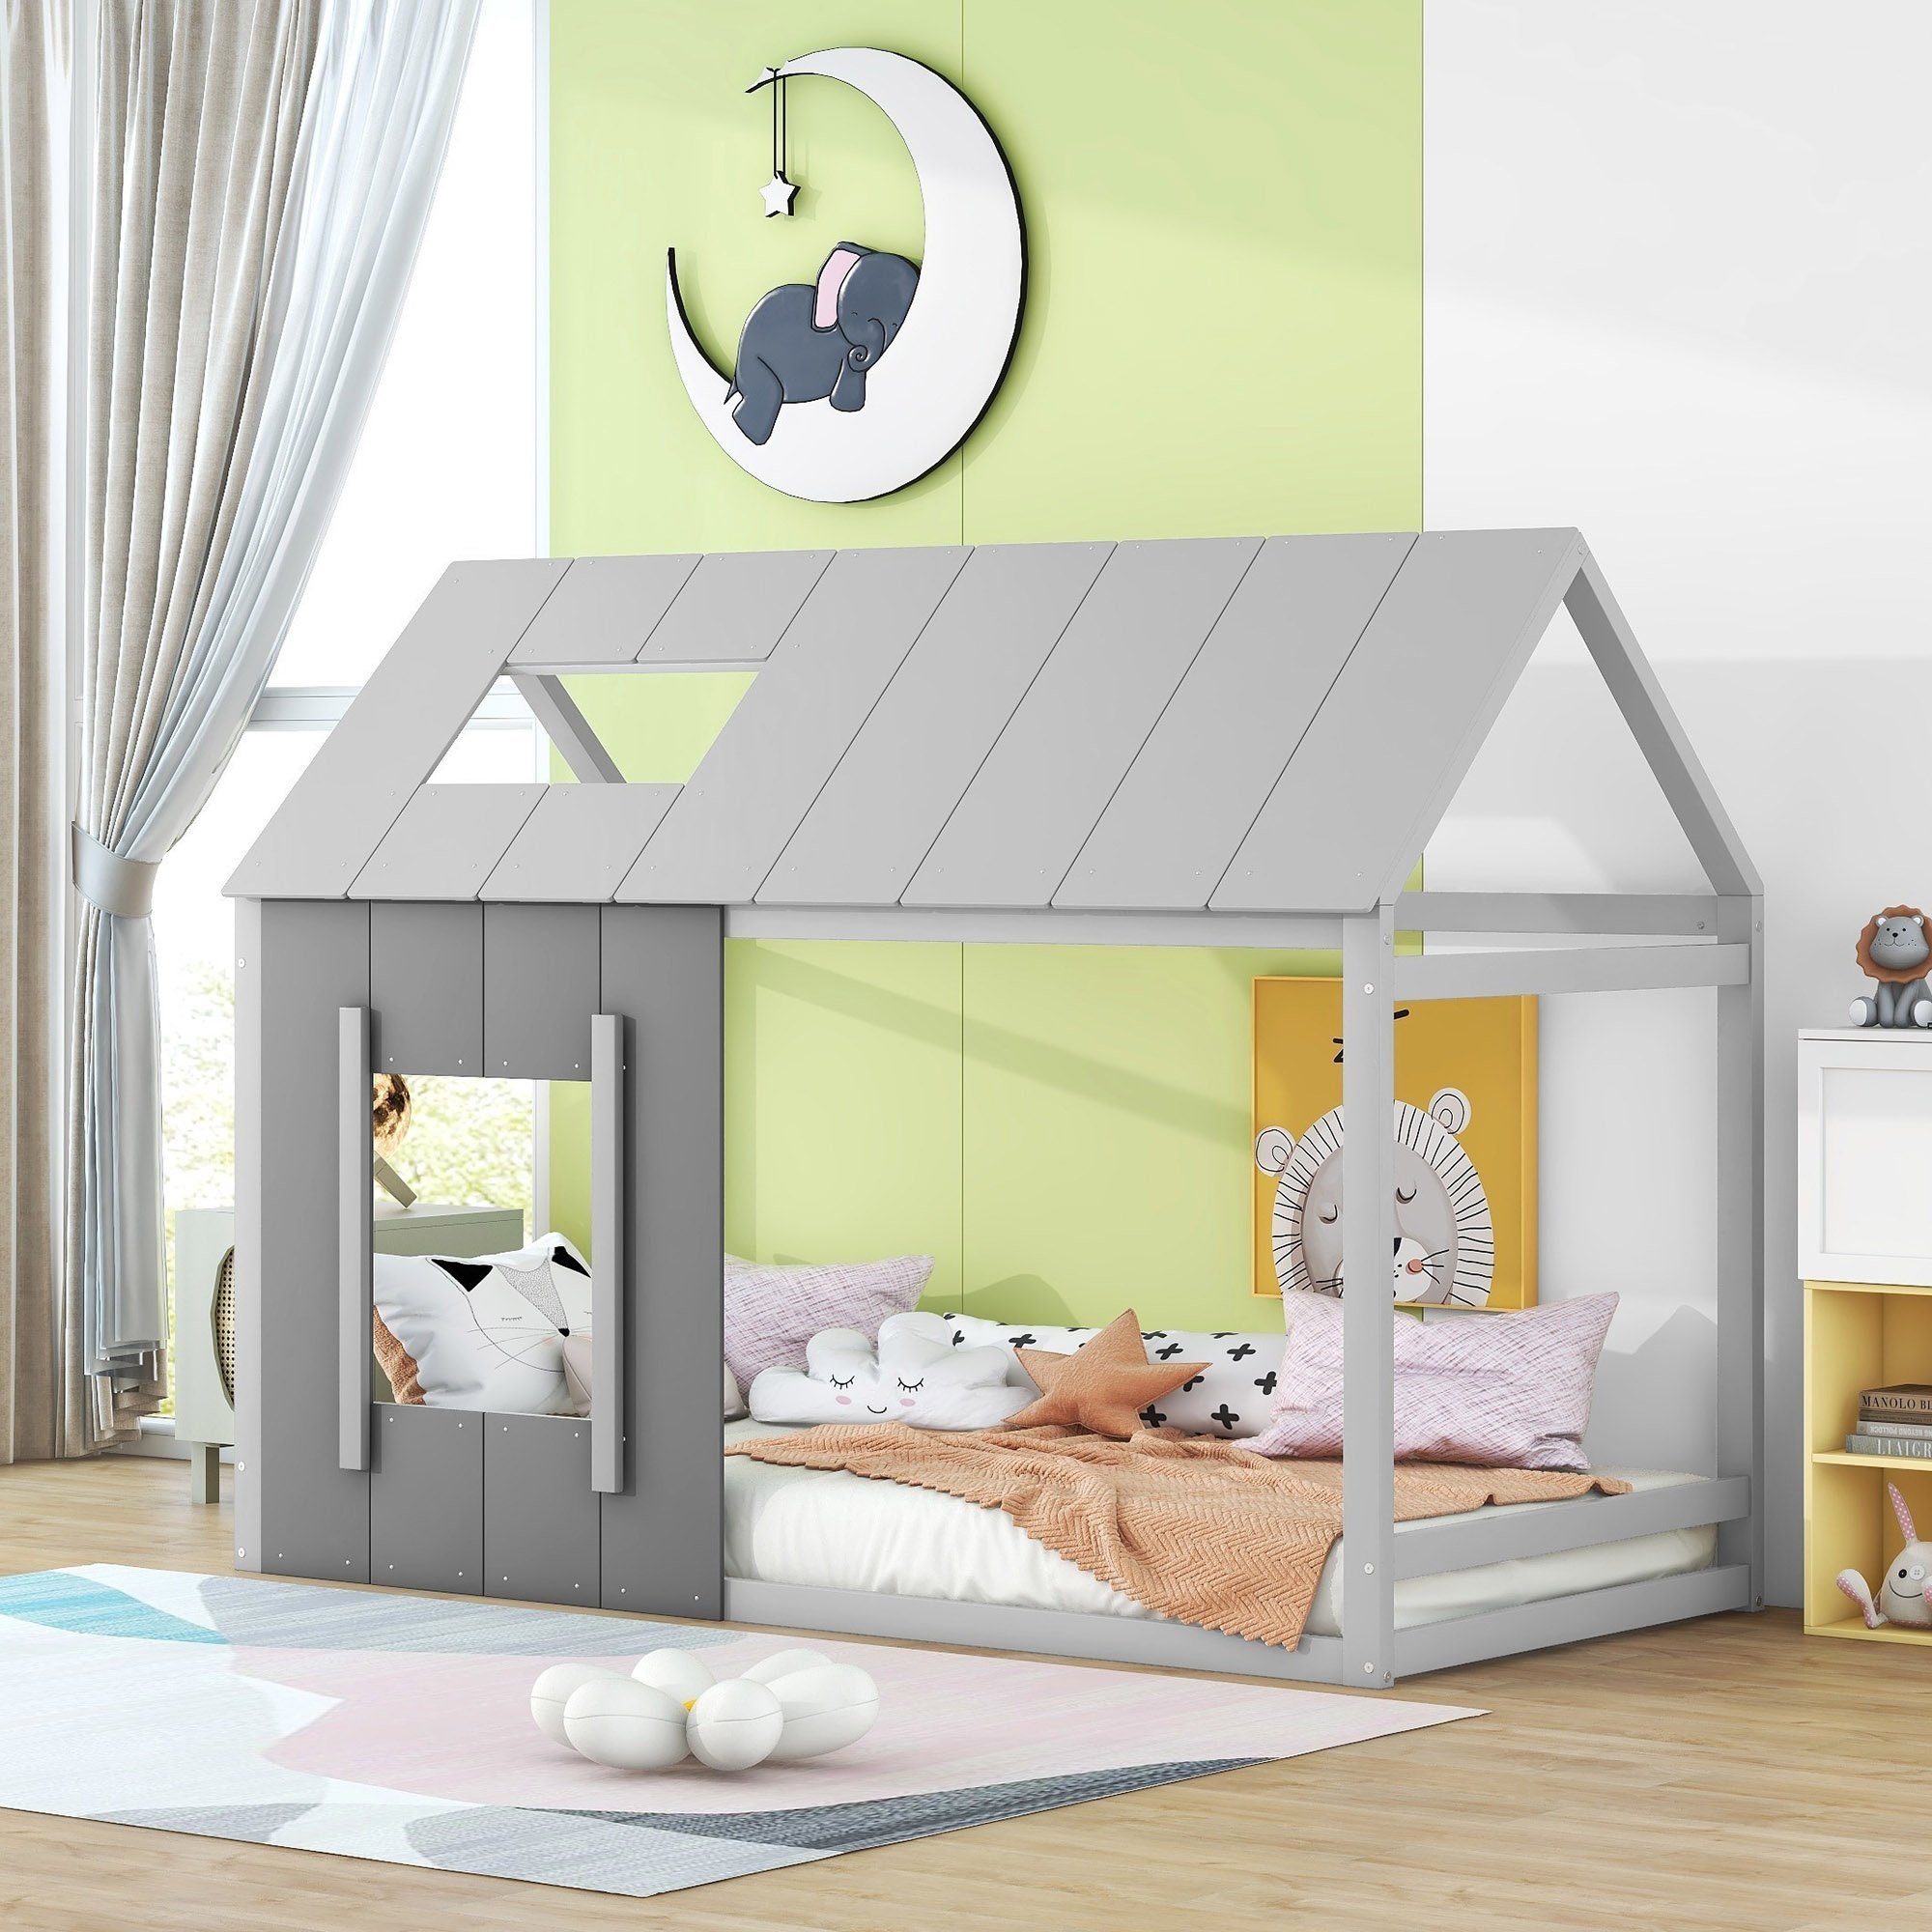 Flieks Kinderbett, Massivholz Einzelbett Hausbett mit Dach und Fenster 90x200cm grau